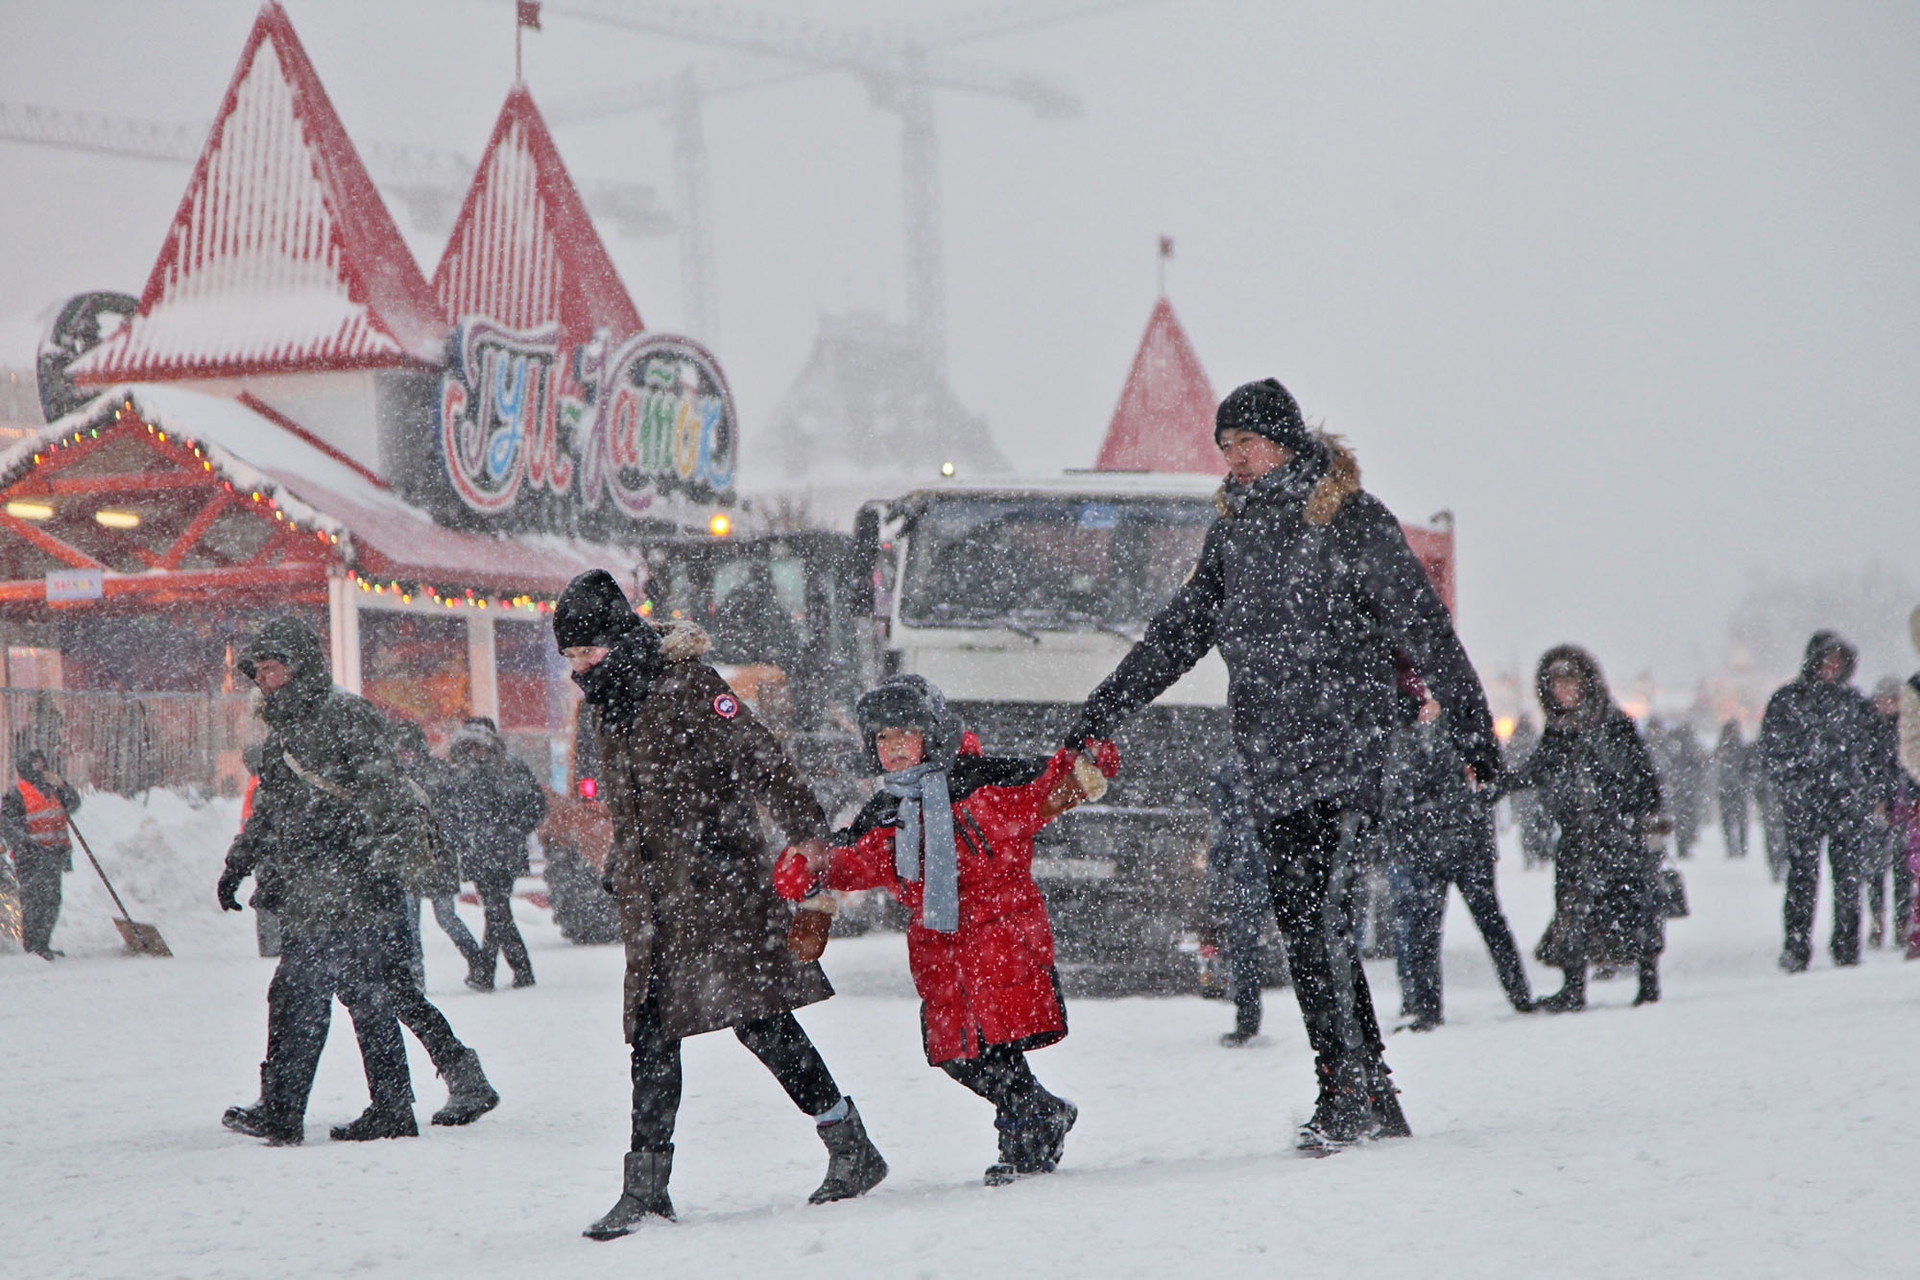 Pasangan suami istri mengandeng anak mereka saat badai salju di Lapangan Merah, Moskow, Rusia, Sabtu (26/1).    